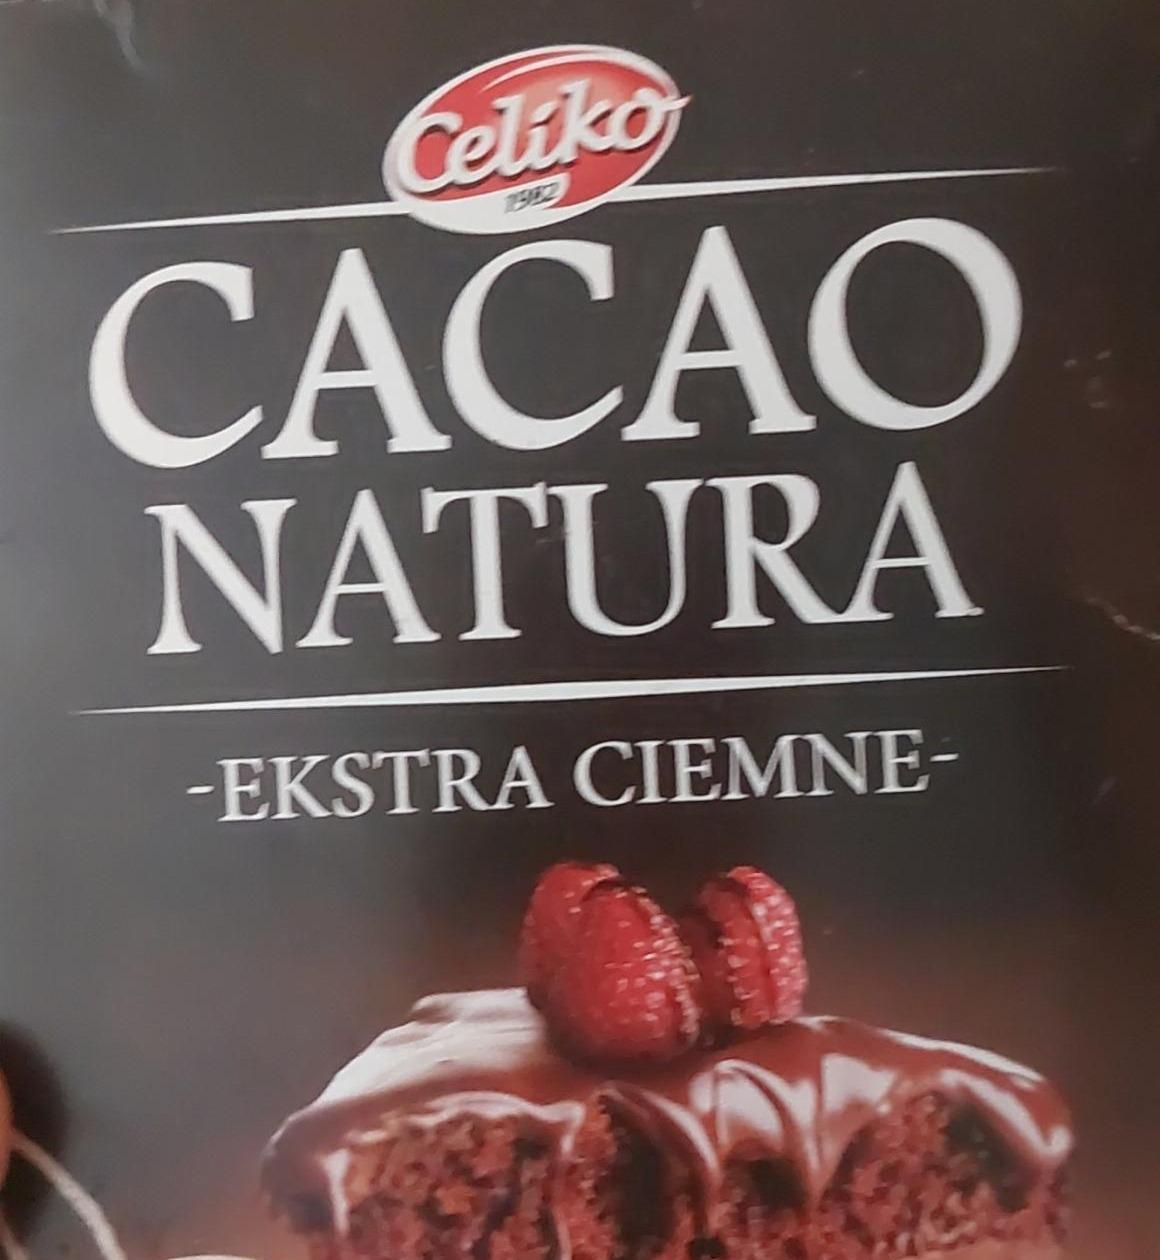 Фото - Cacao natura extra ciemne Celiko